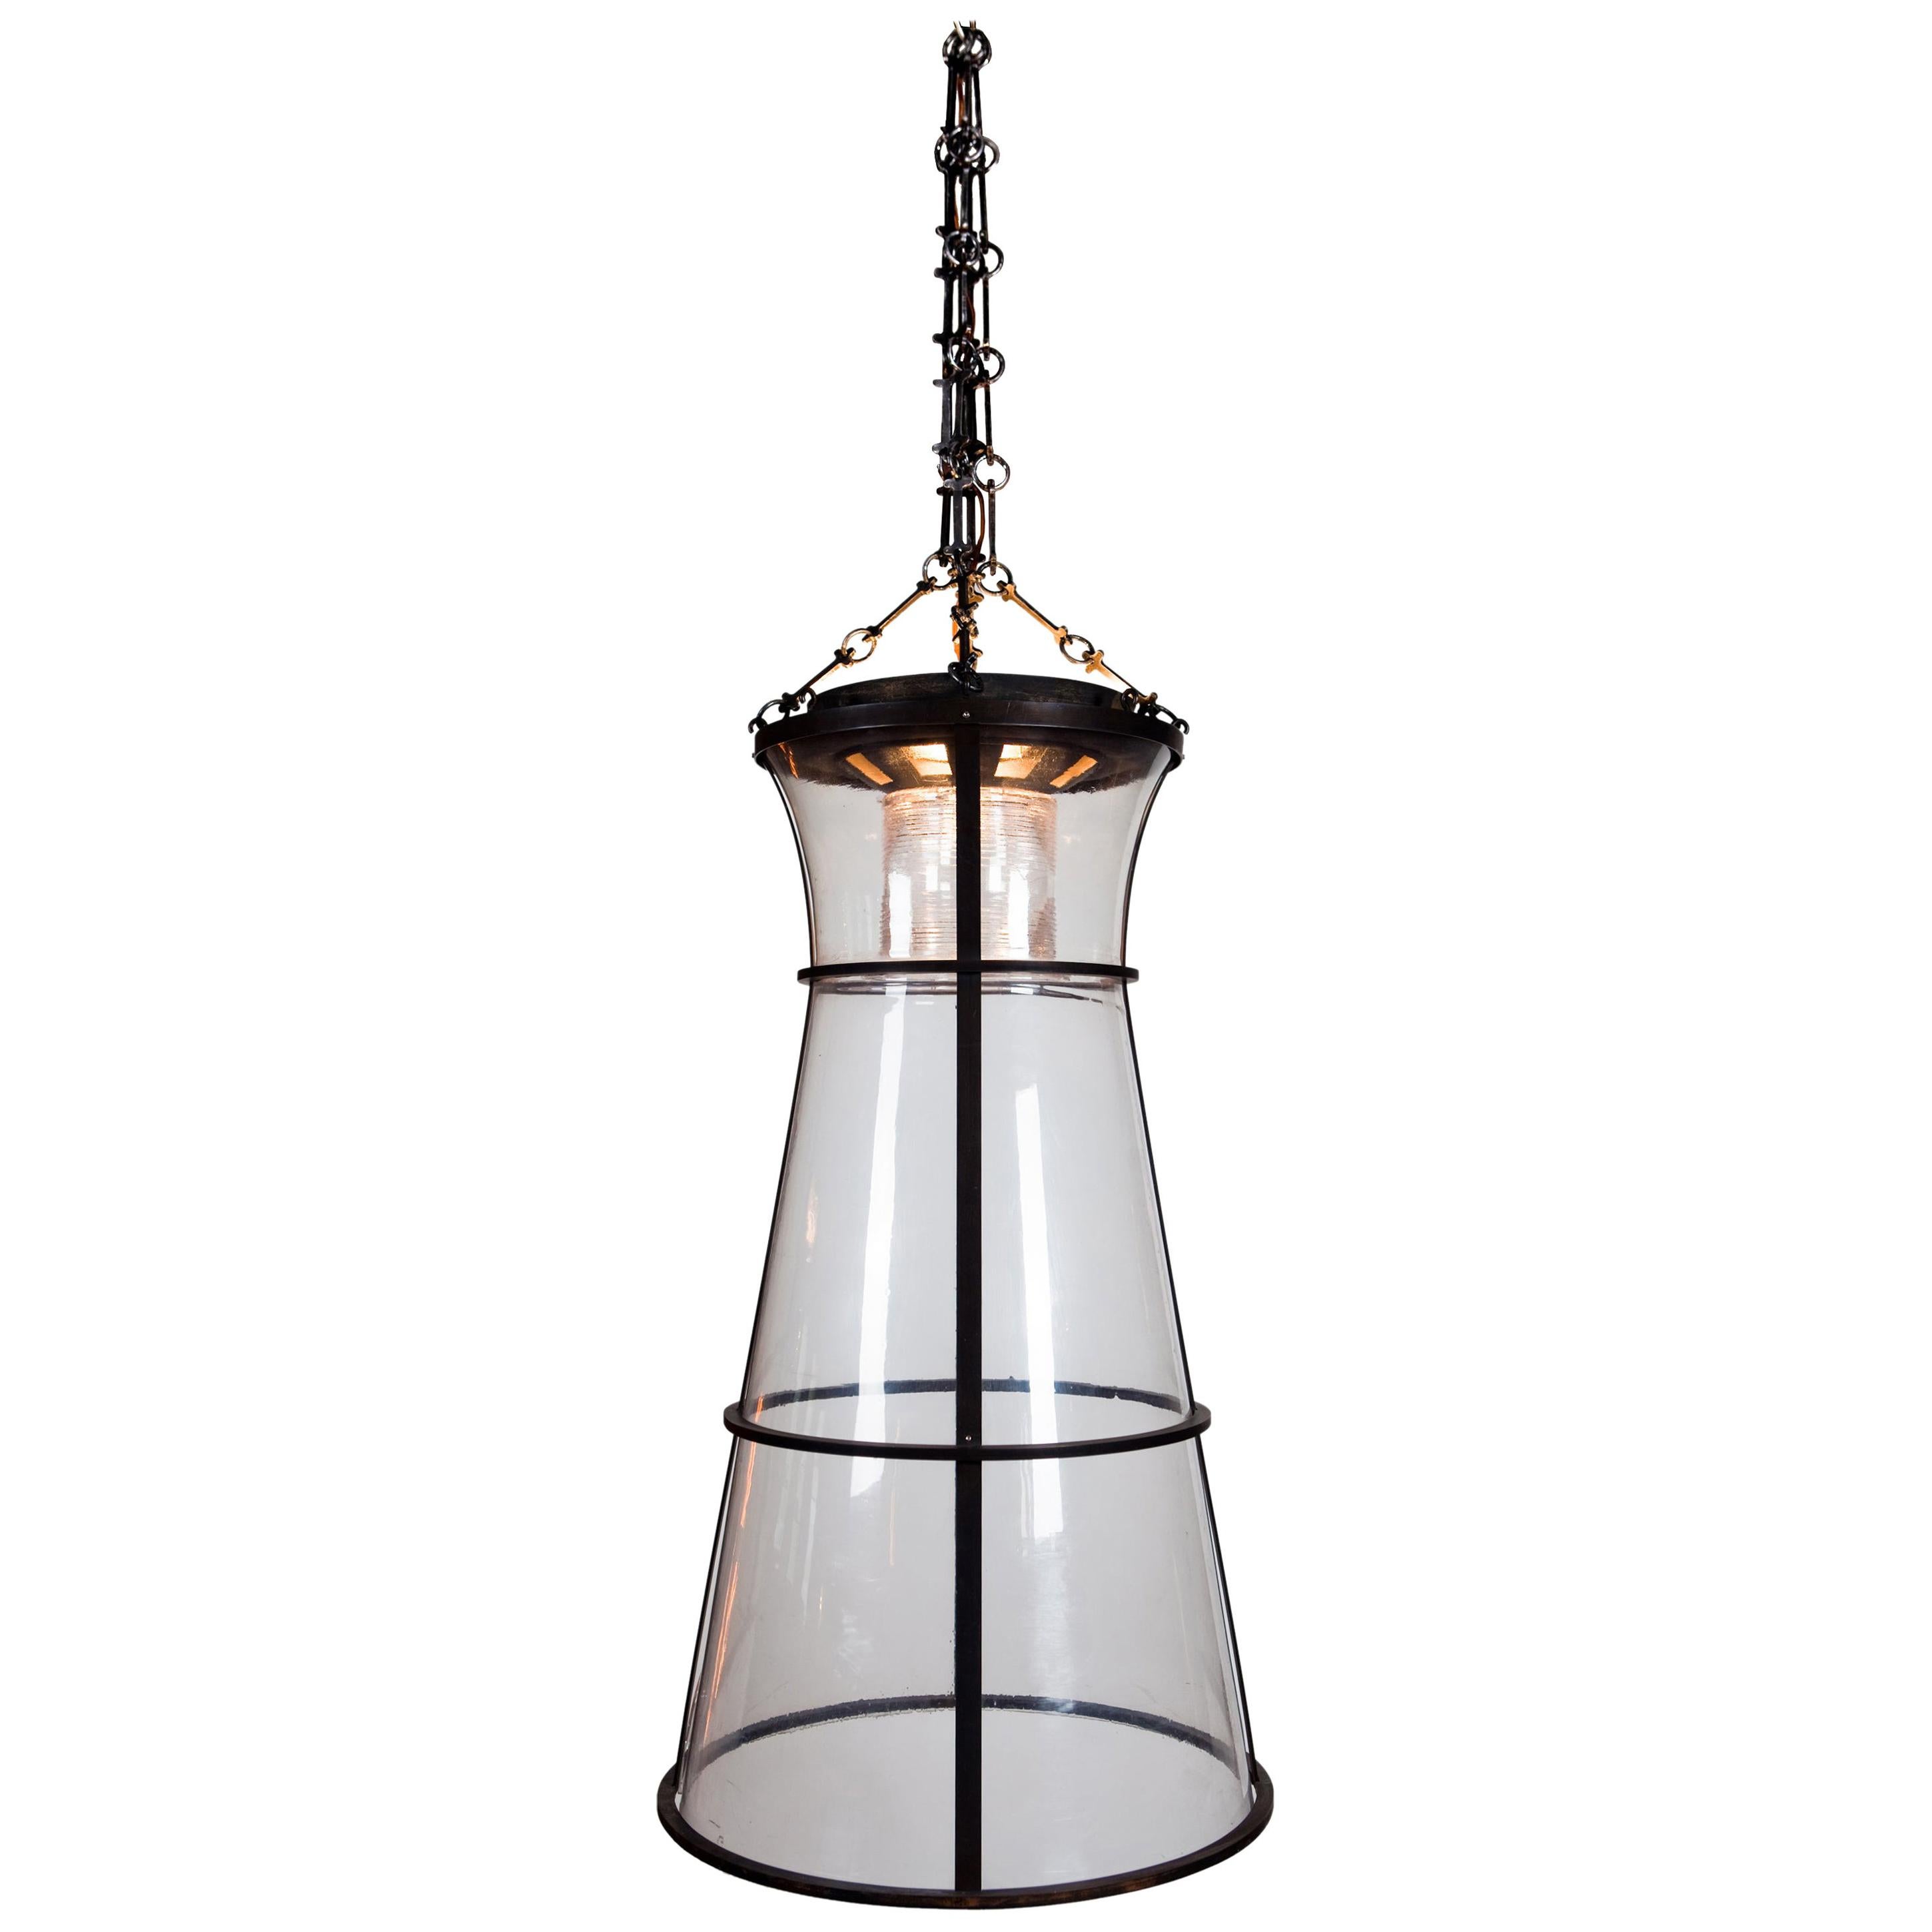 Leuchtturm-Kegelanhänger aus Polycarbonat, entworfen von Atelier Boucquet